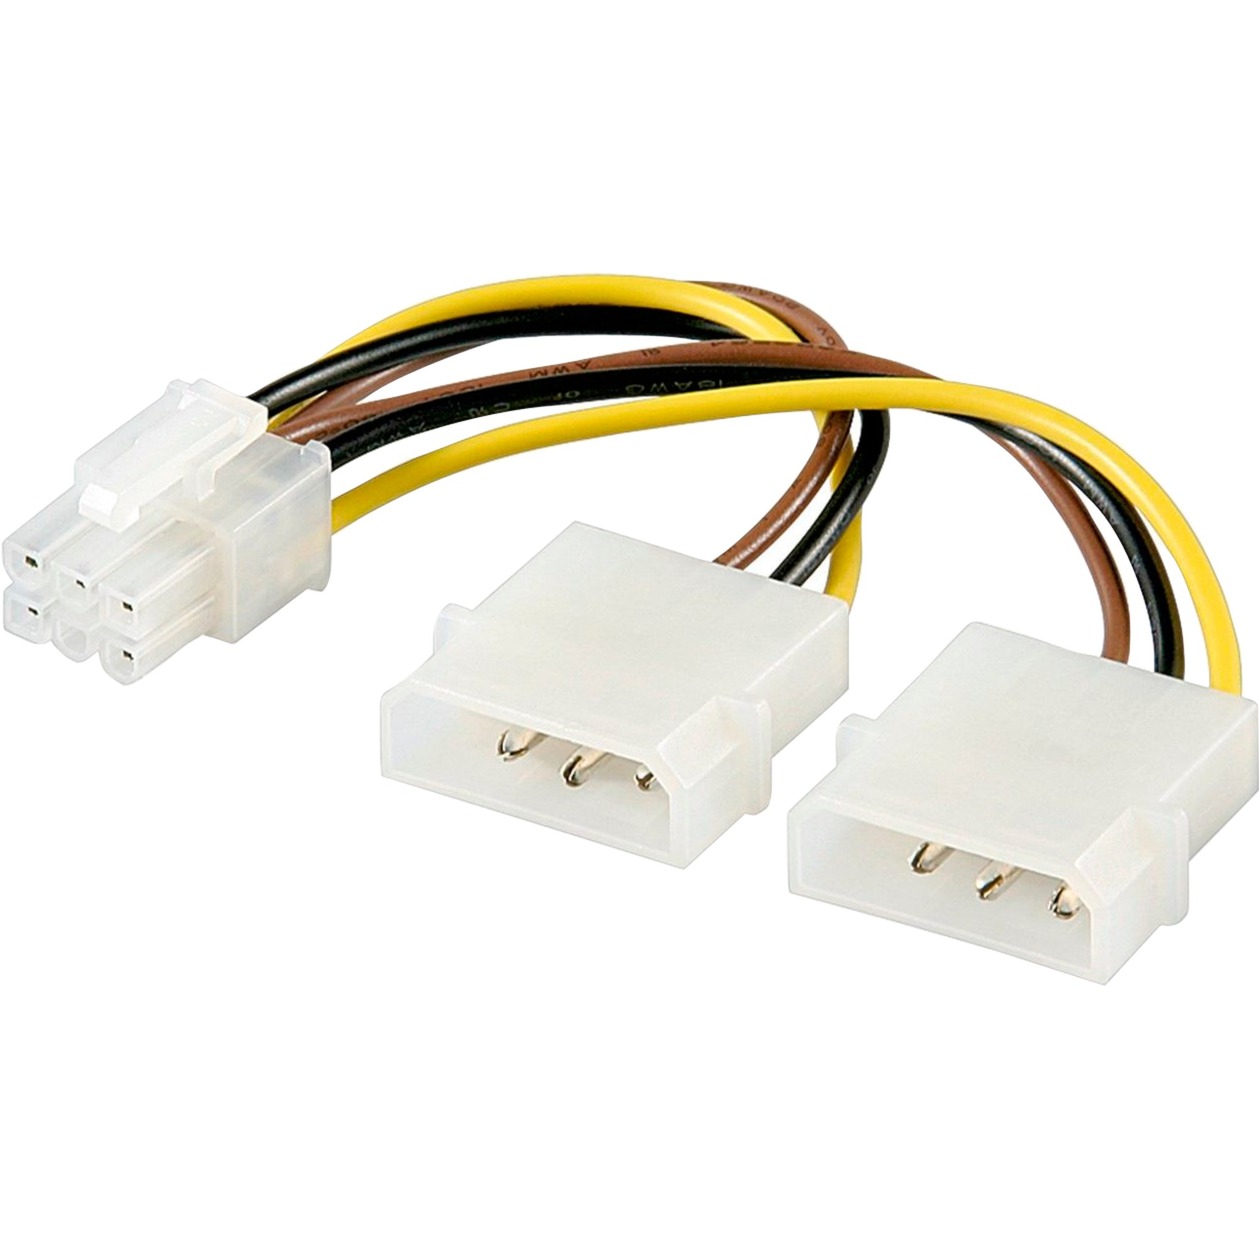 Image of Alternate - Internes PC-Stromkabel 2x 5,25-Stecker auf PCI Express 6-pin online einkaufen bei Alternate